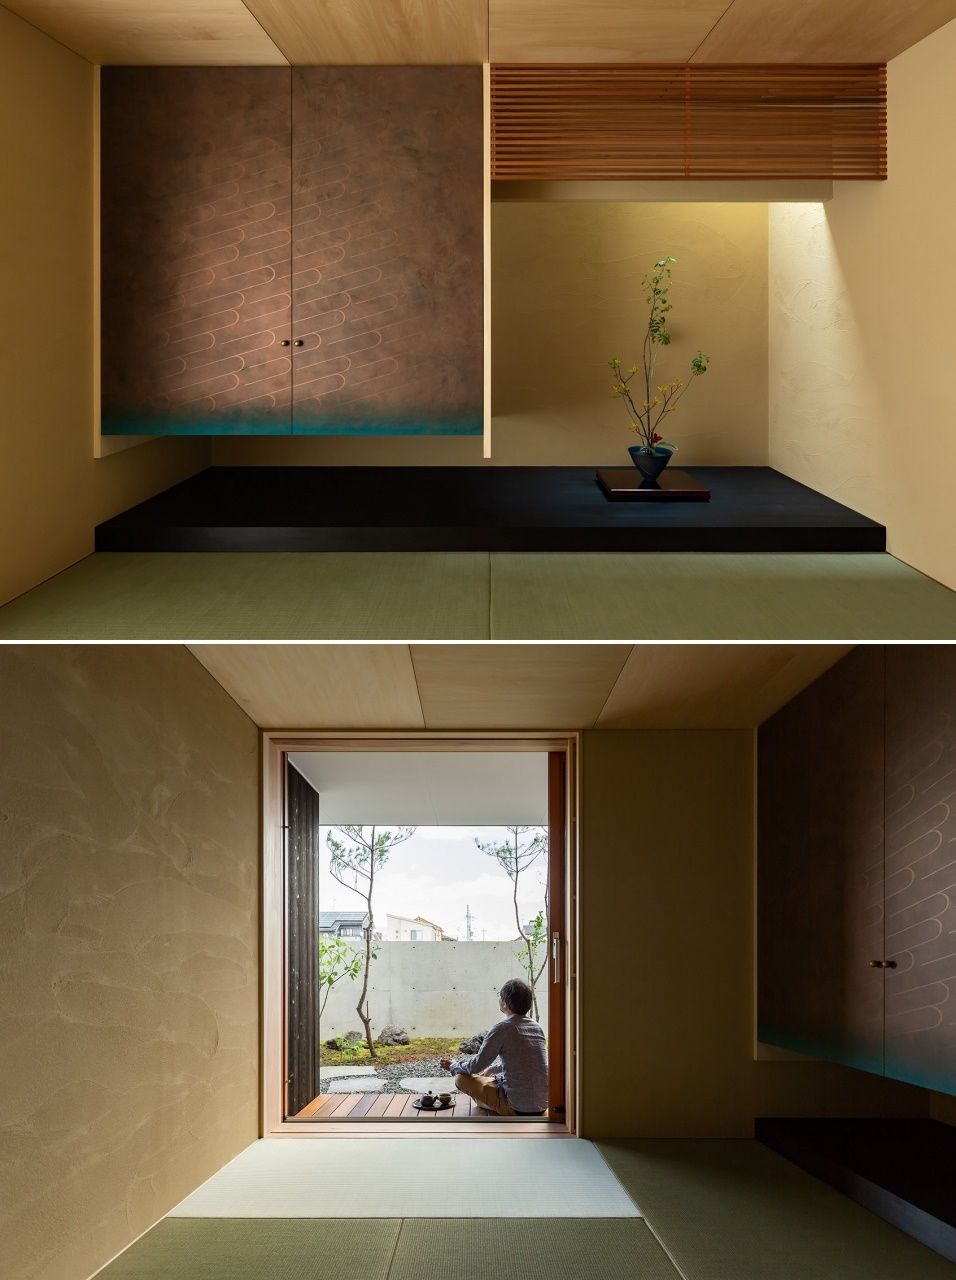 Căn phòng kiểu Nhật ở phía sau nhà là nơi thư giãn vô cùng riêng tư